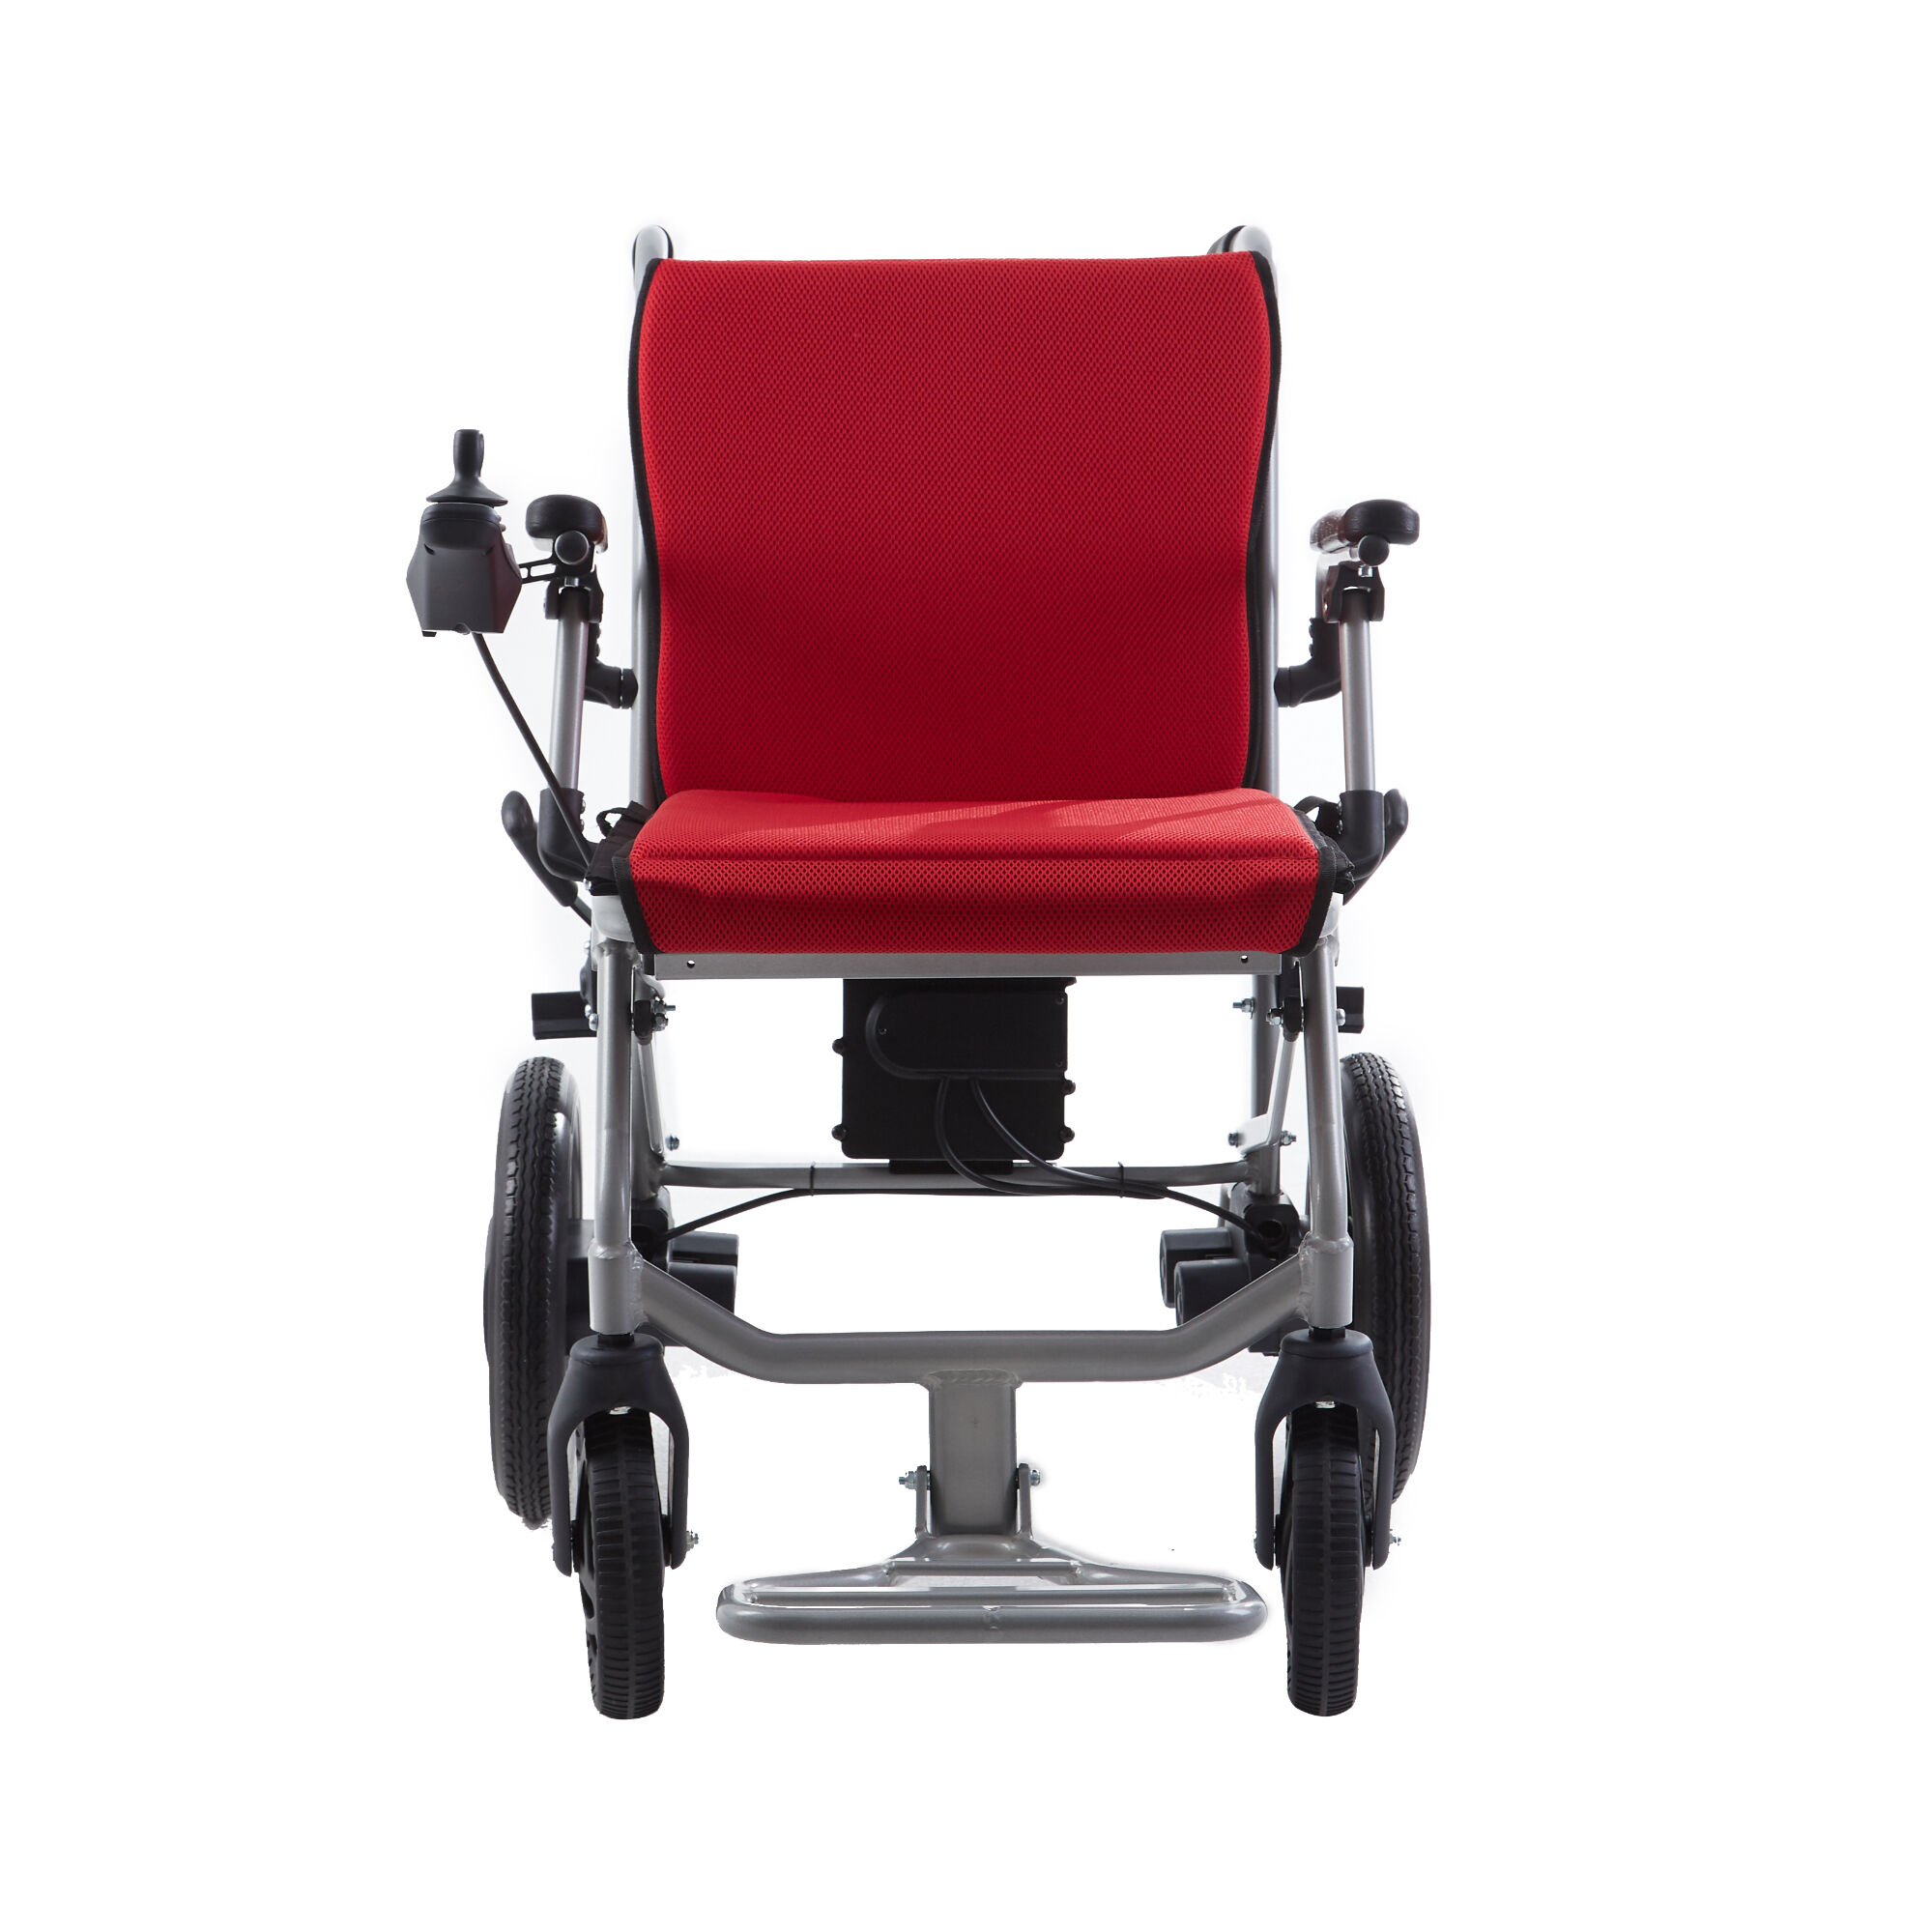 BC-EALD3 Aluminiowy, ultralżejszy, składany, elektryczny wózek inwalidzki